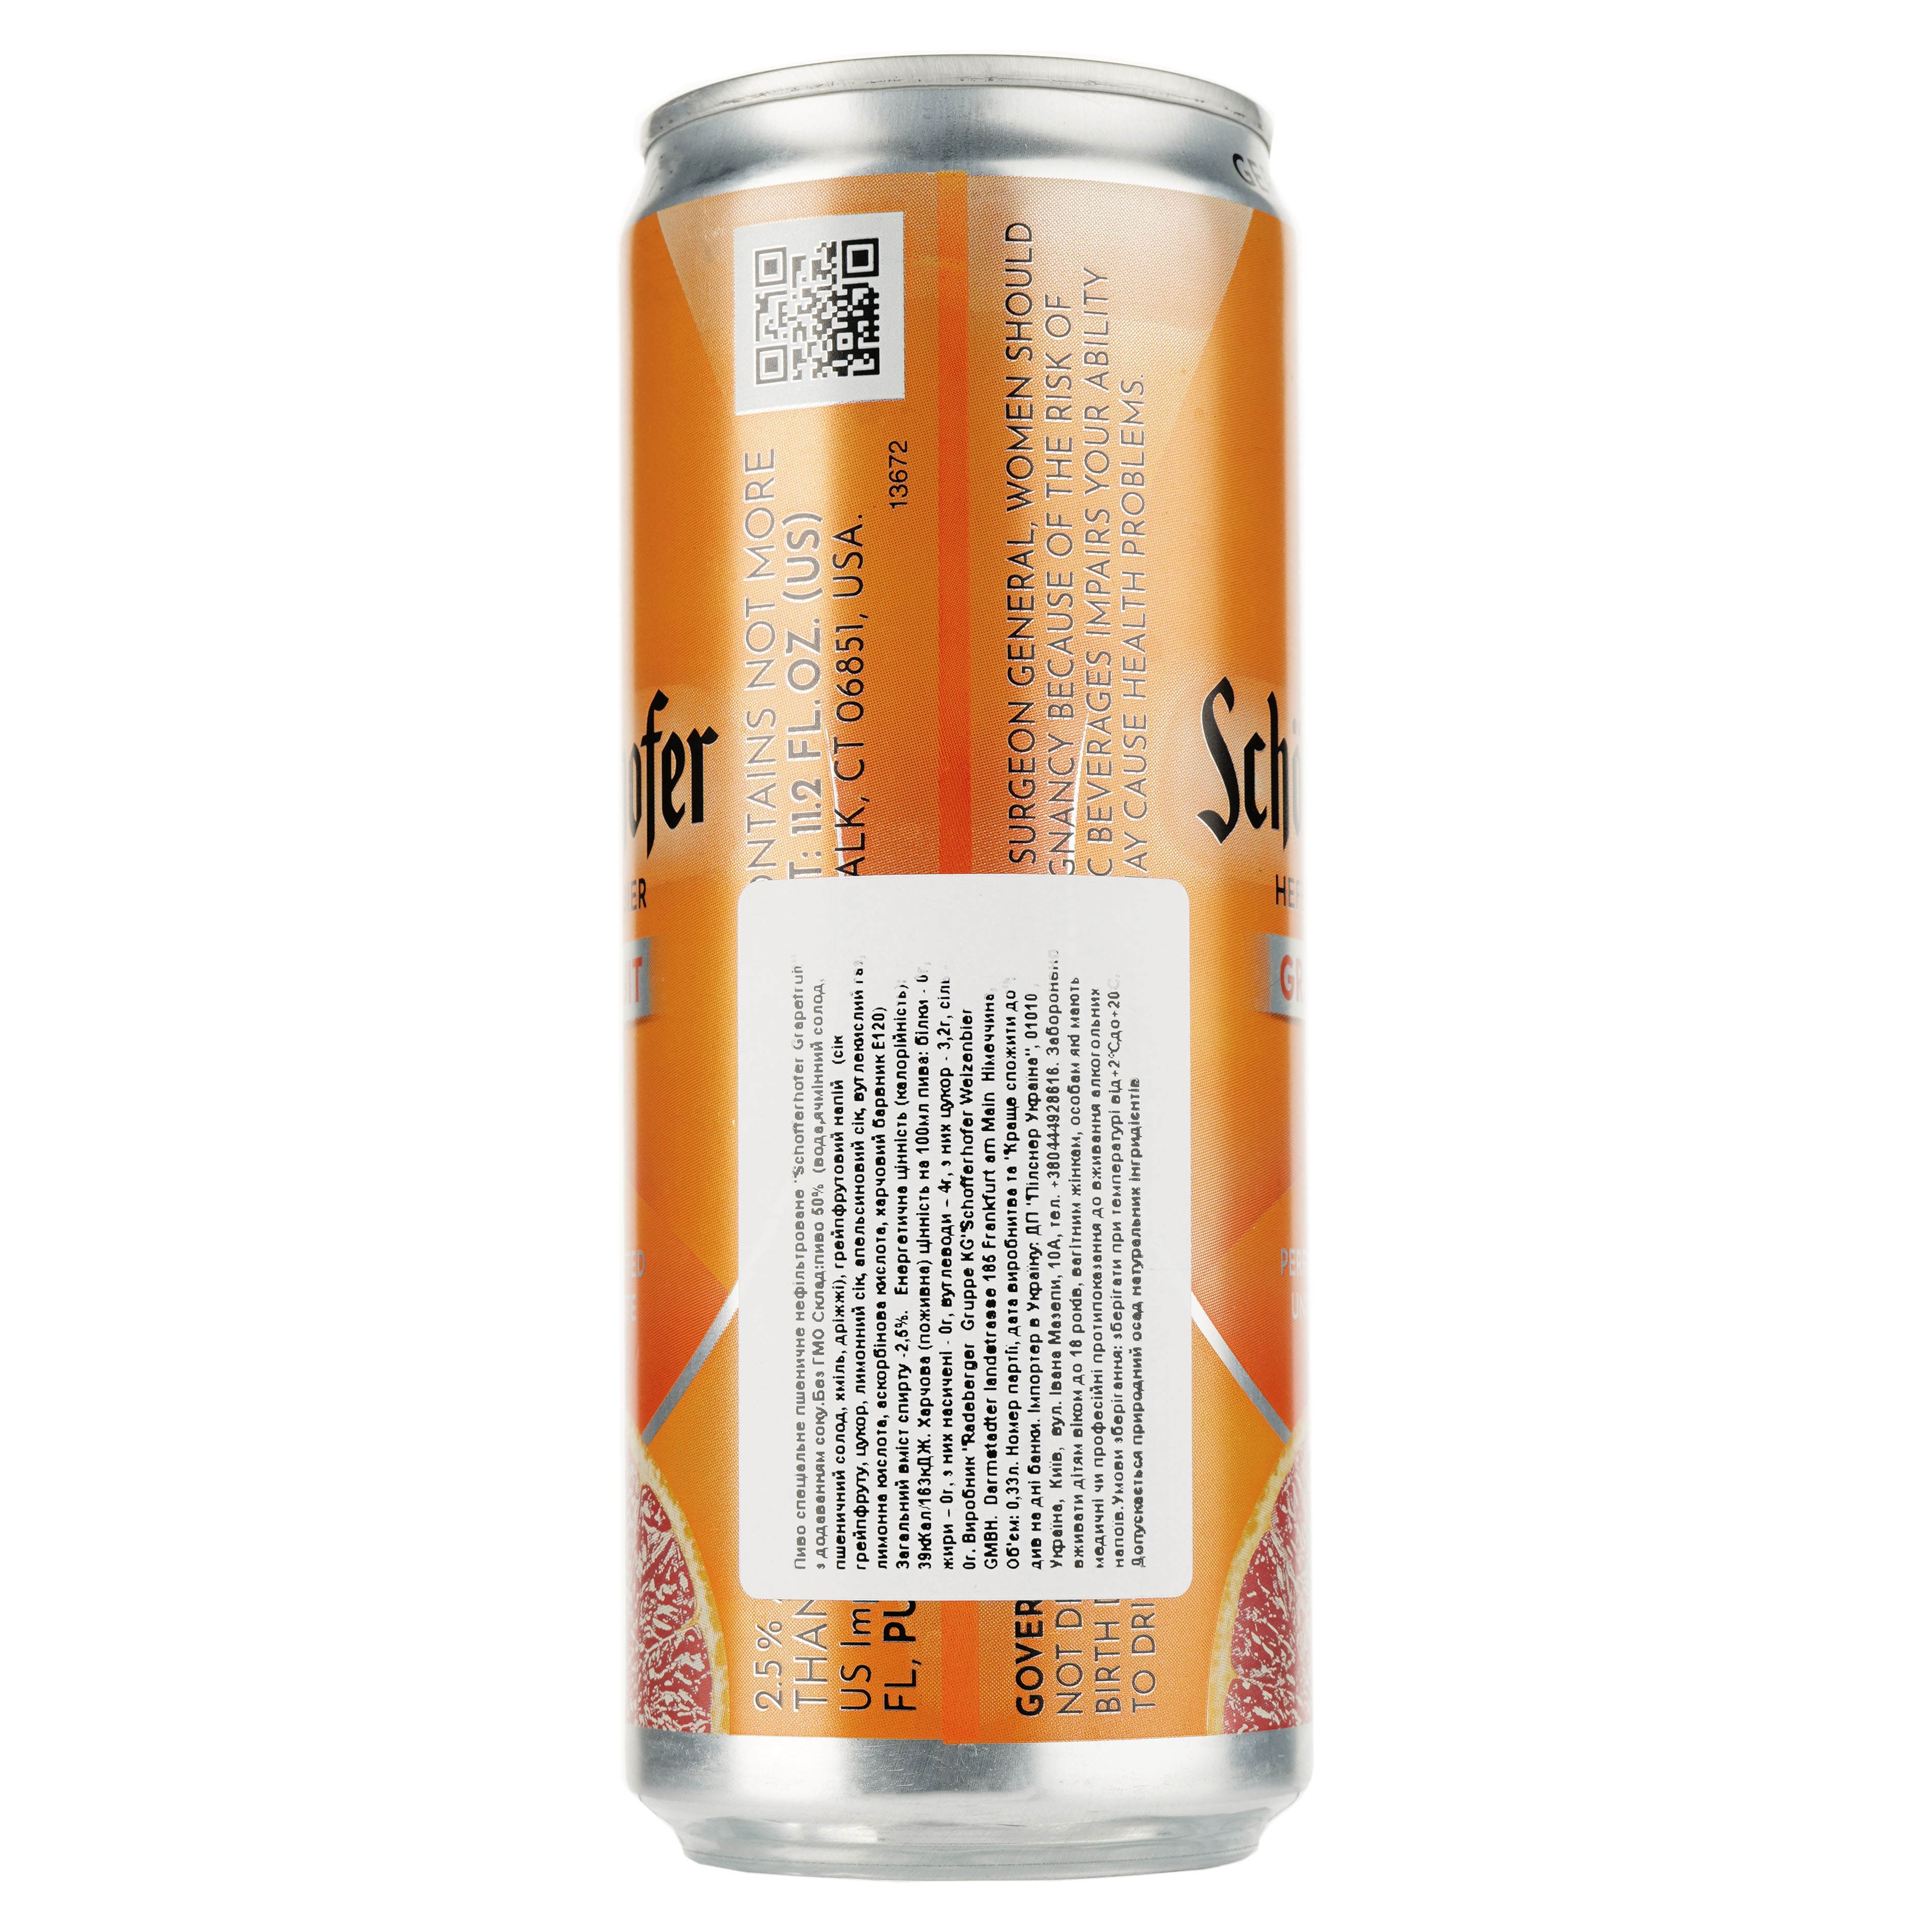 Пиво Schöfferhofer Grapefruit, пшеничное, нефильтрованное, с соком, 2,5%, ж/б, 0,33 л - фото 2